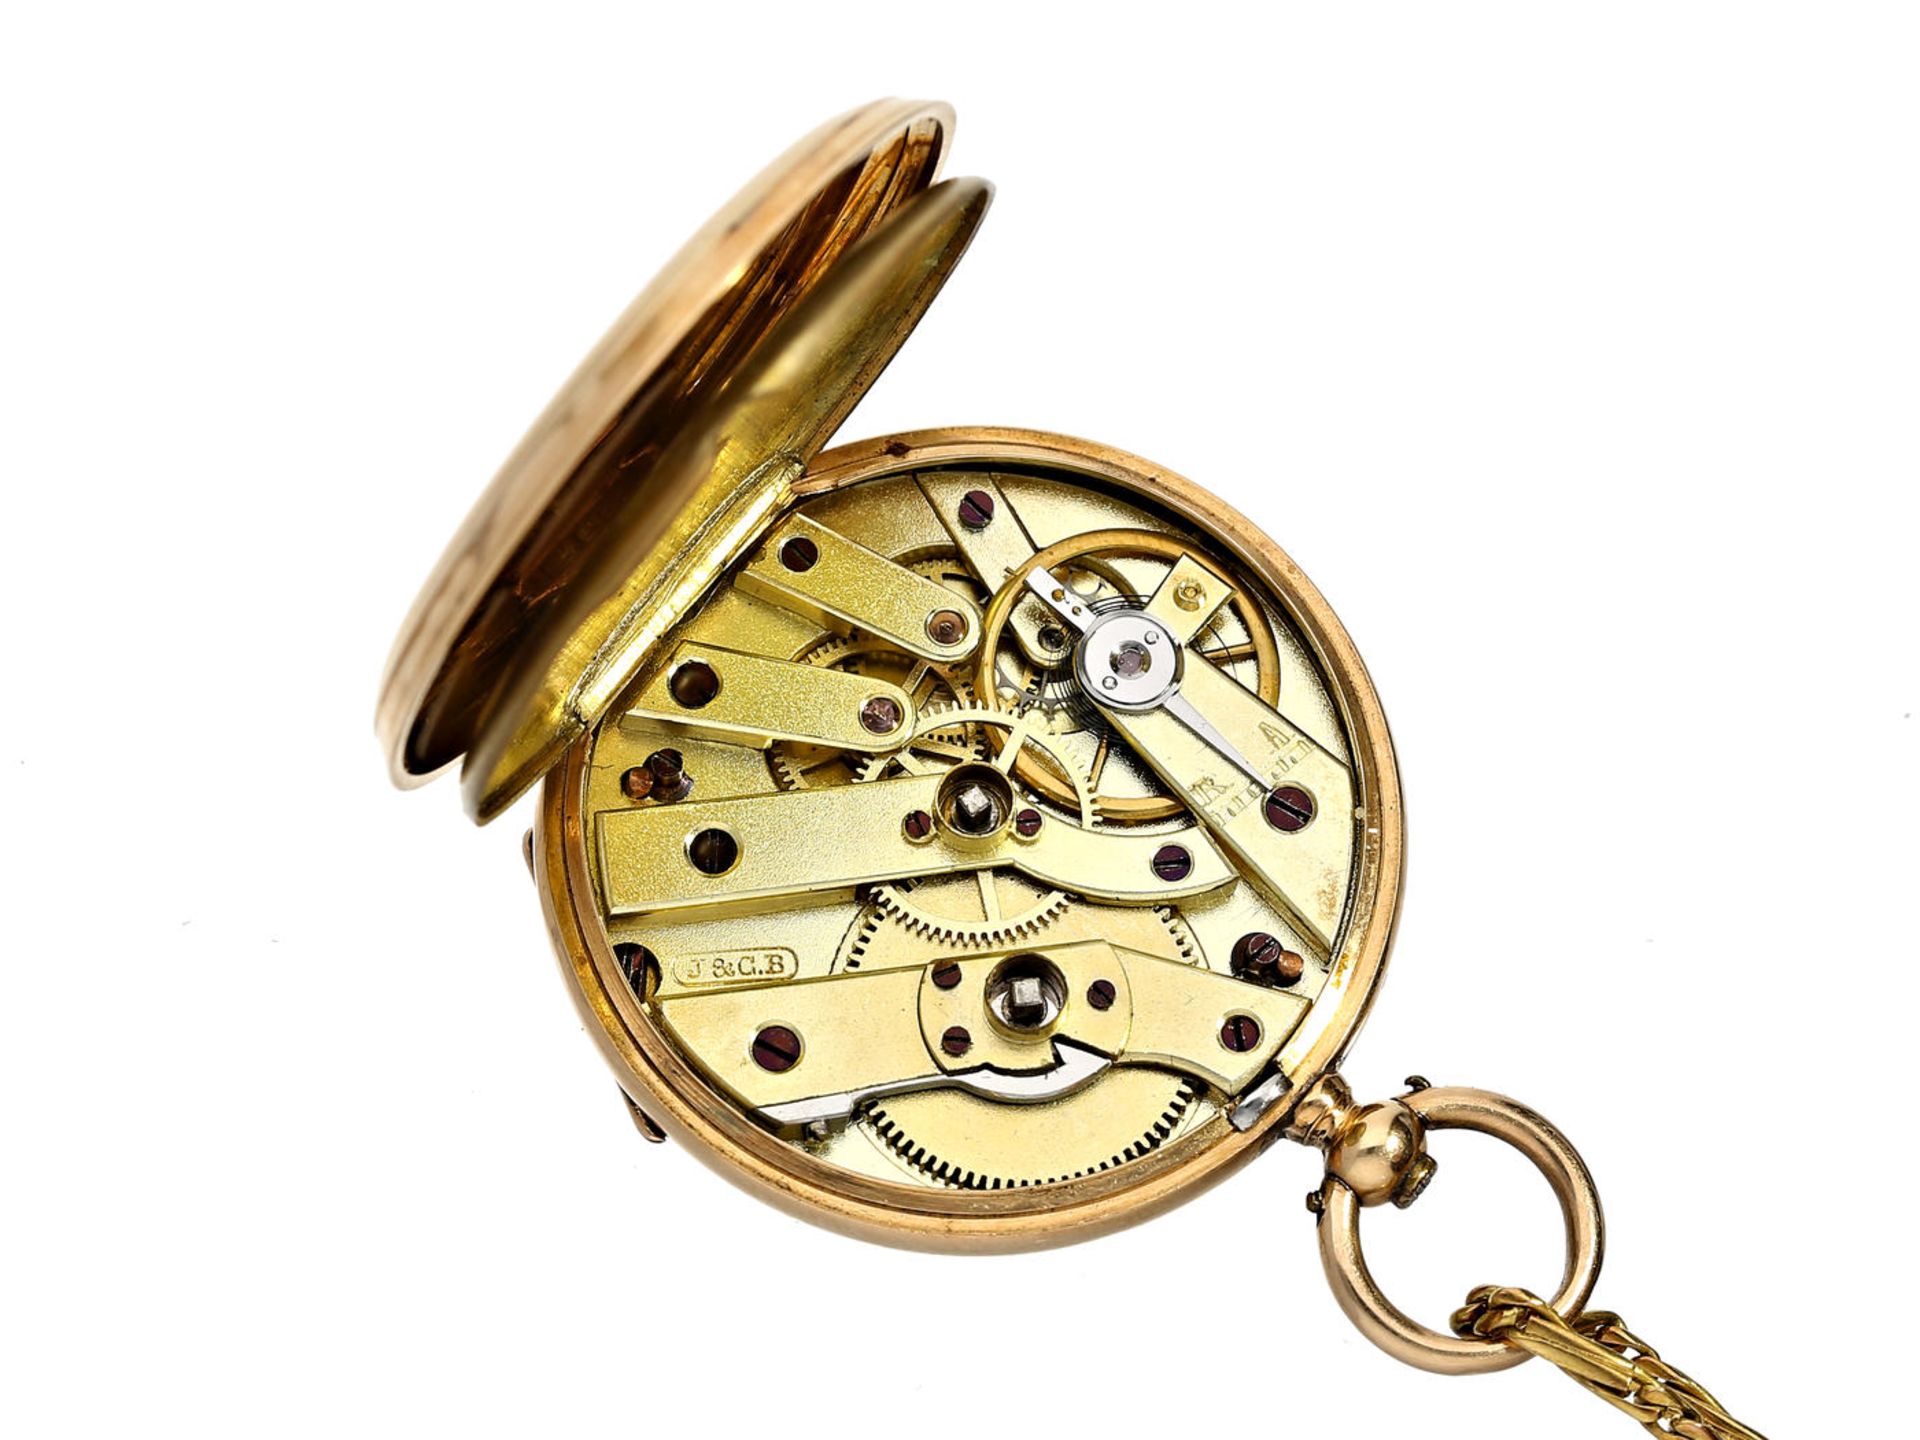 Taschenuhr/Anhängeuhr: feine Damenuhr mit dazugehöriger goldener Uhrenkette, signiert J & C.B - Image 2 of 3